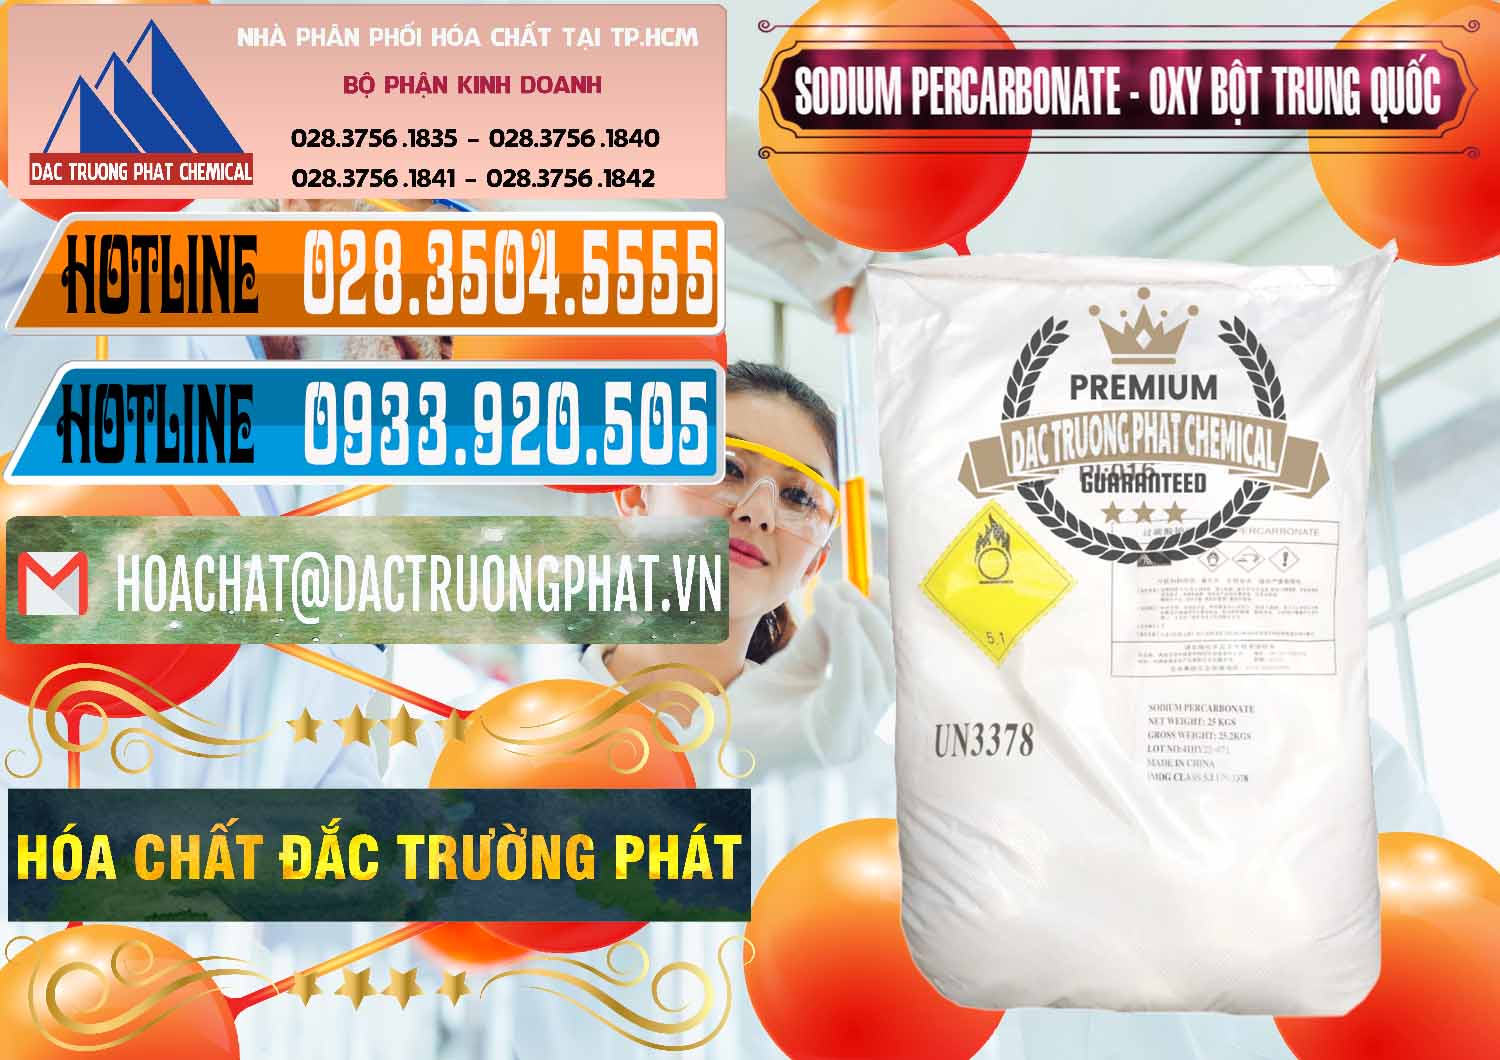 Nơi chuyên nhập khẩu _ bán Sodium Percarbonate Dạng Bột Trung Quốc China - 0390 - Cty cung cấp & phân phối hóa chất tại TP.HCM - stmp.net